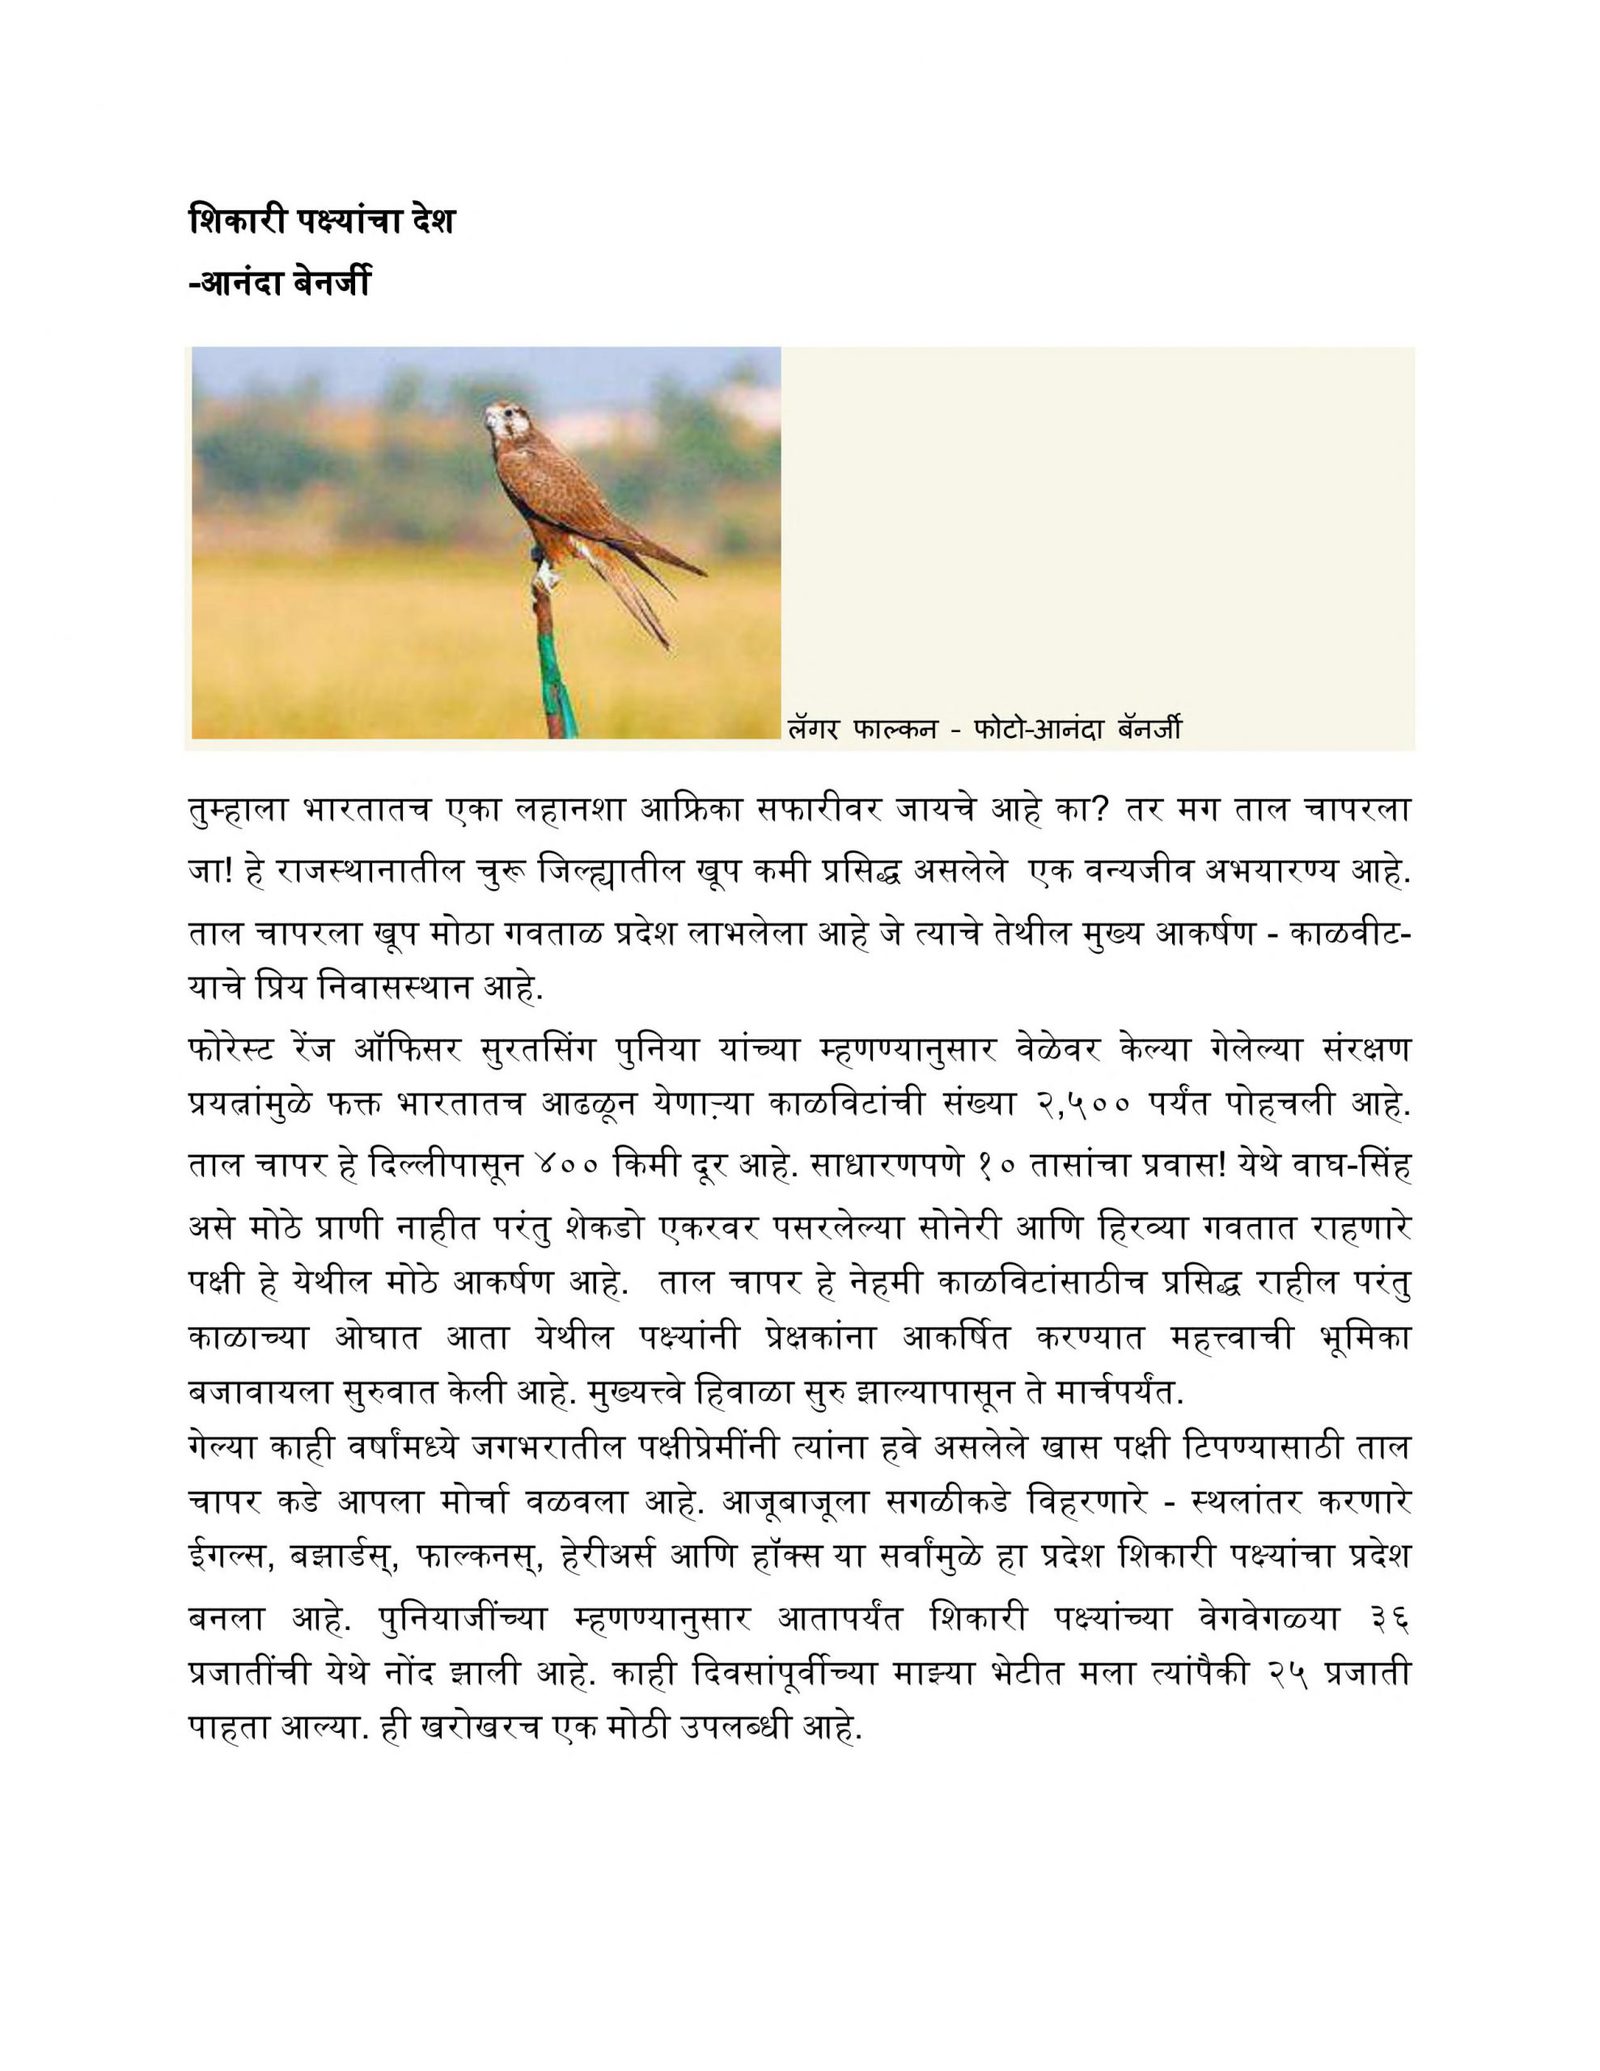 Sikari Pakṣyancha Des Ananda Benerjee Marathi PDF Book